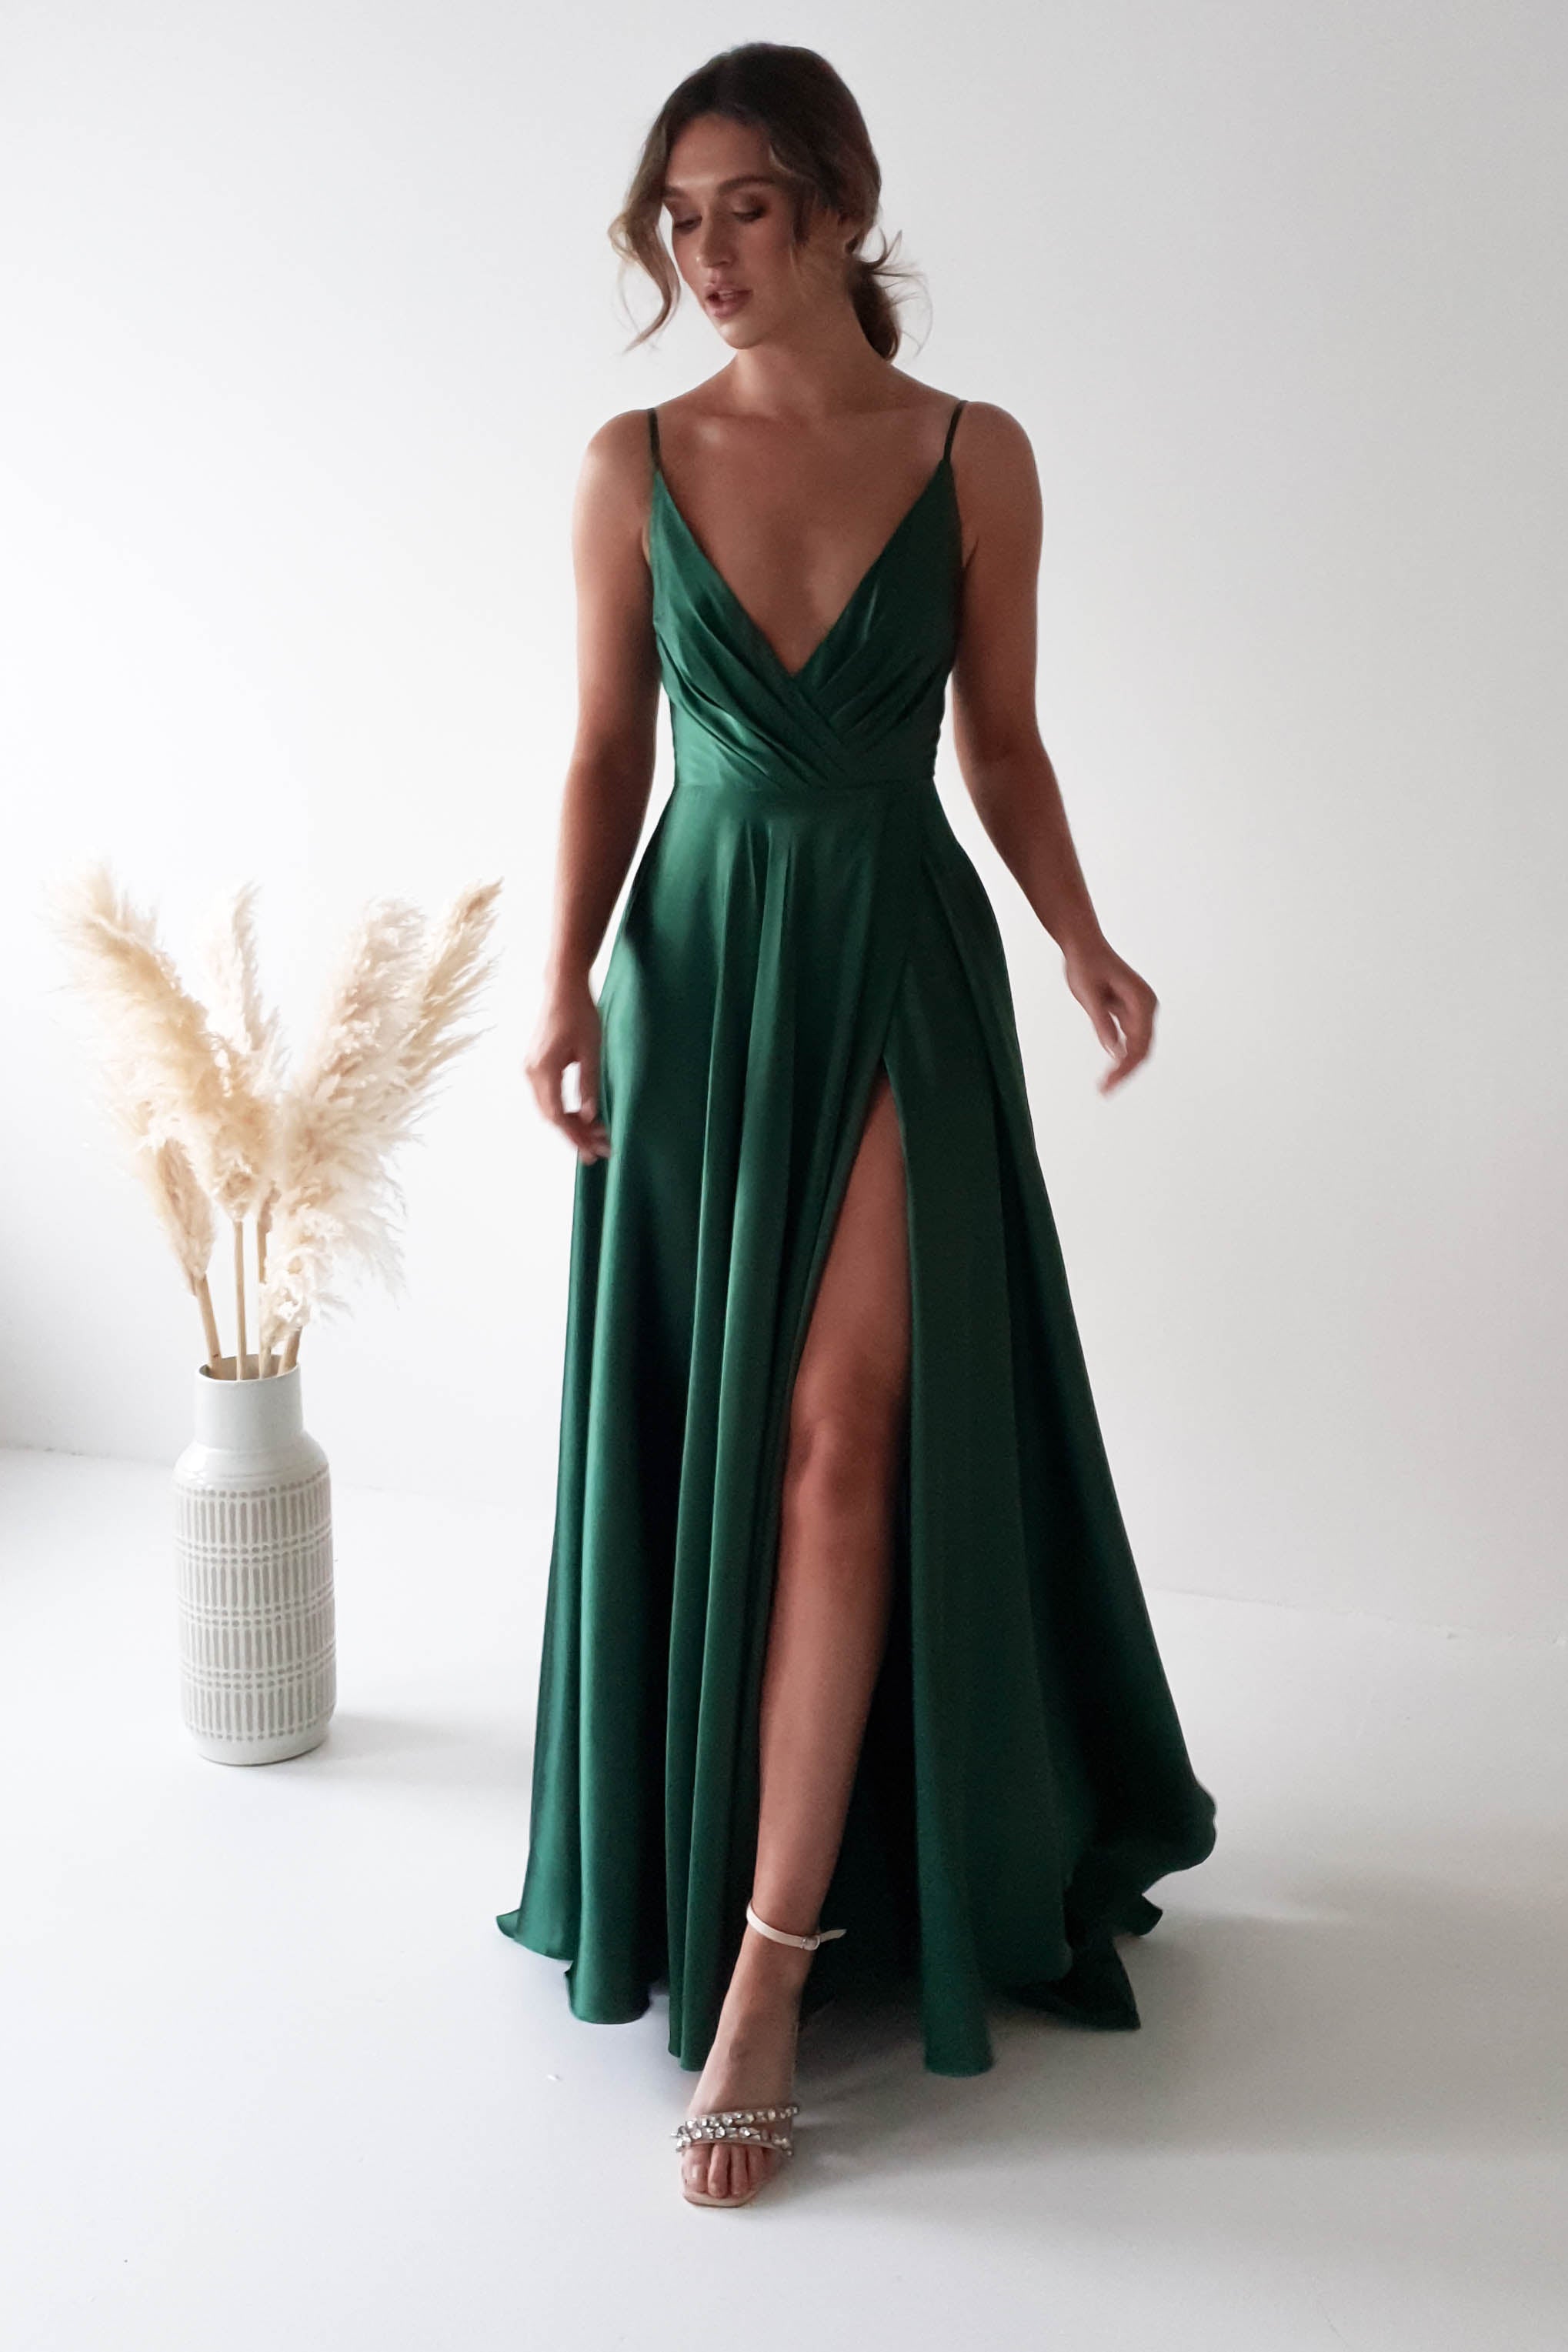 Jossa satin A line full skirt ballgown prom dress - green – Deja